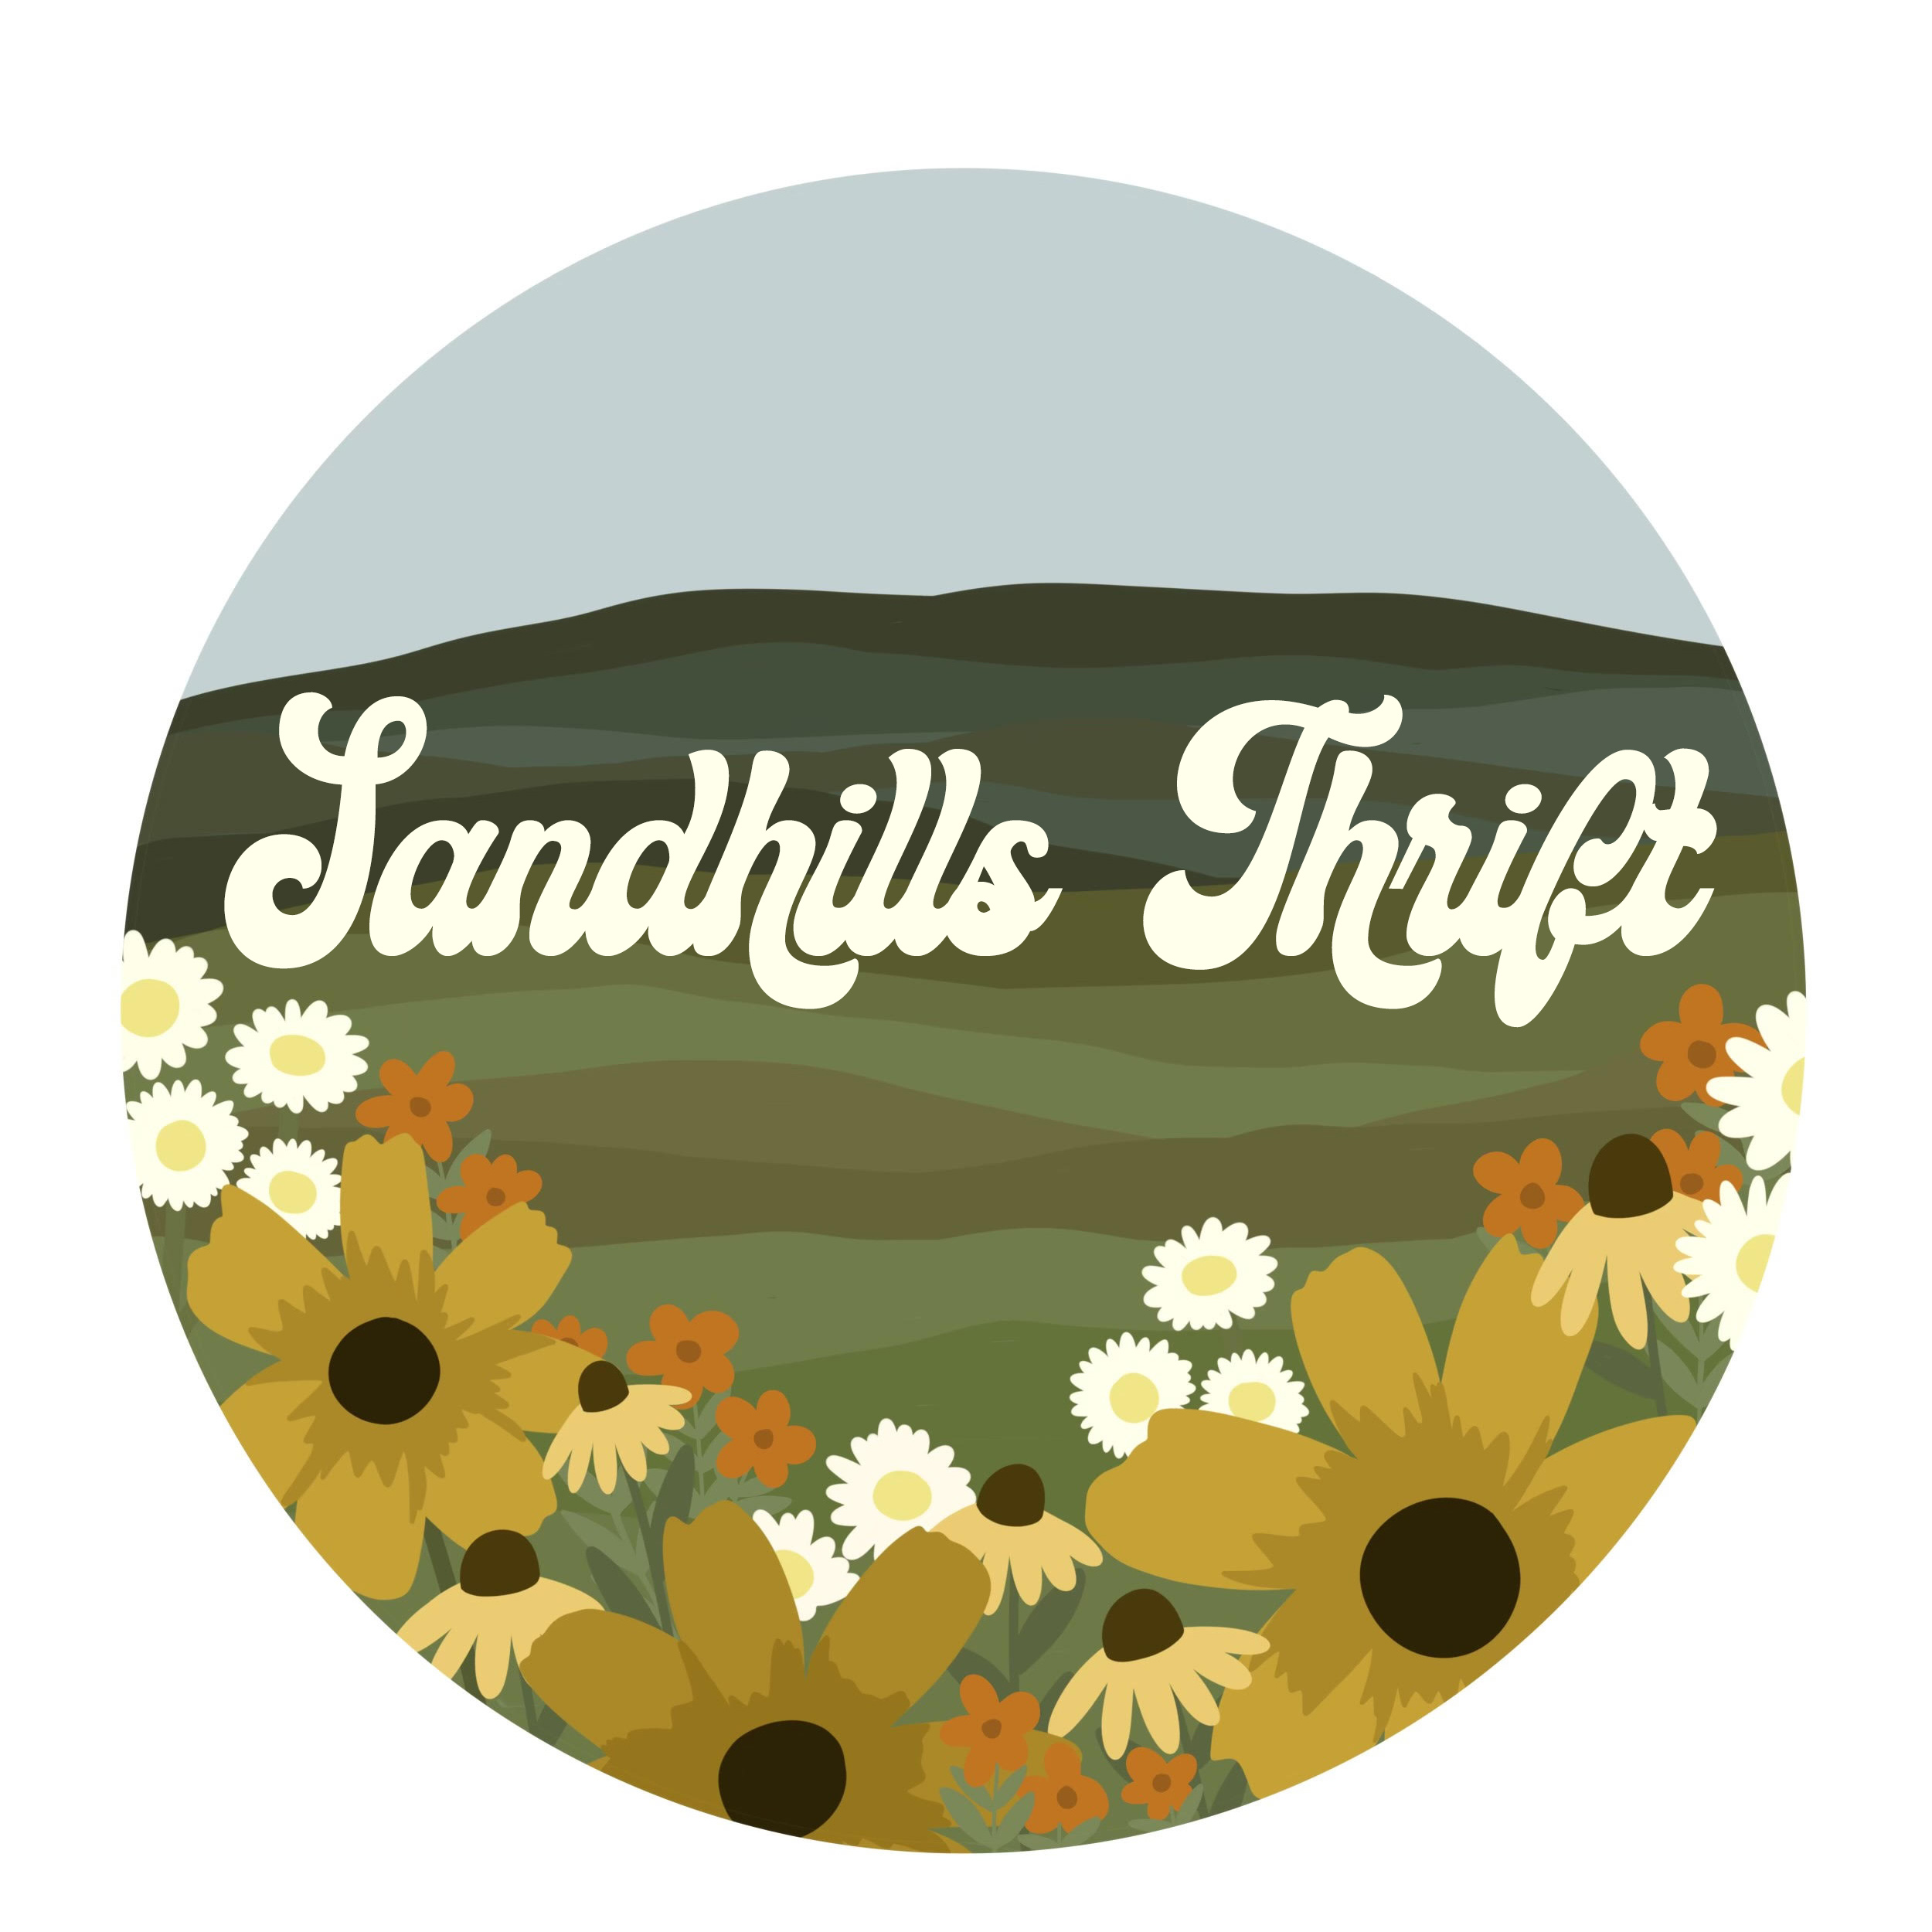 Sandhills Thrift